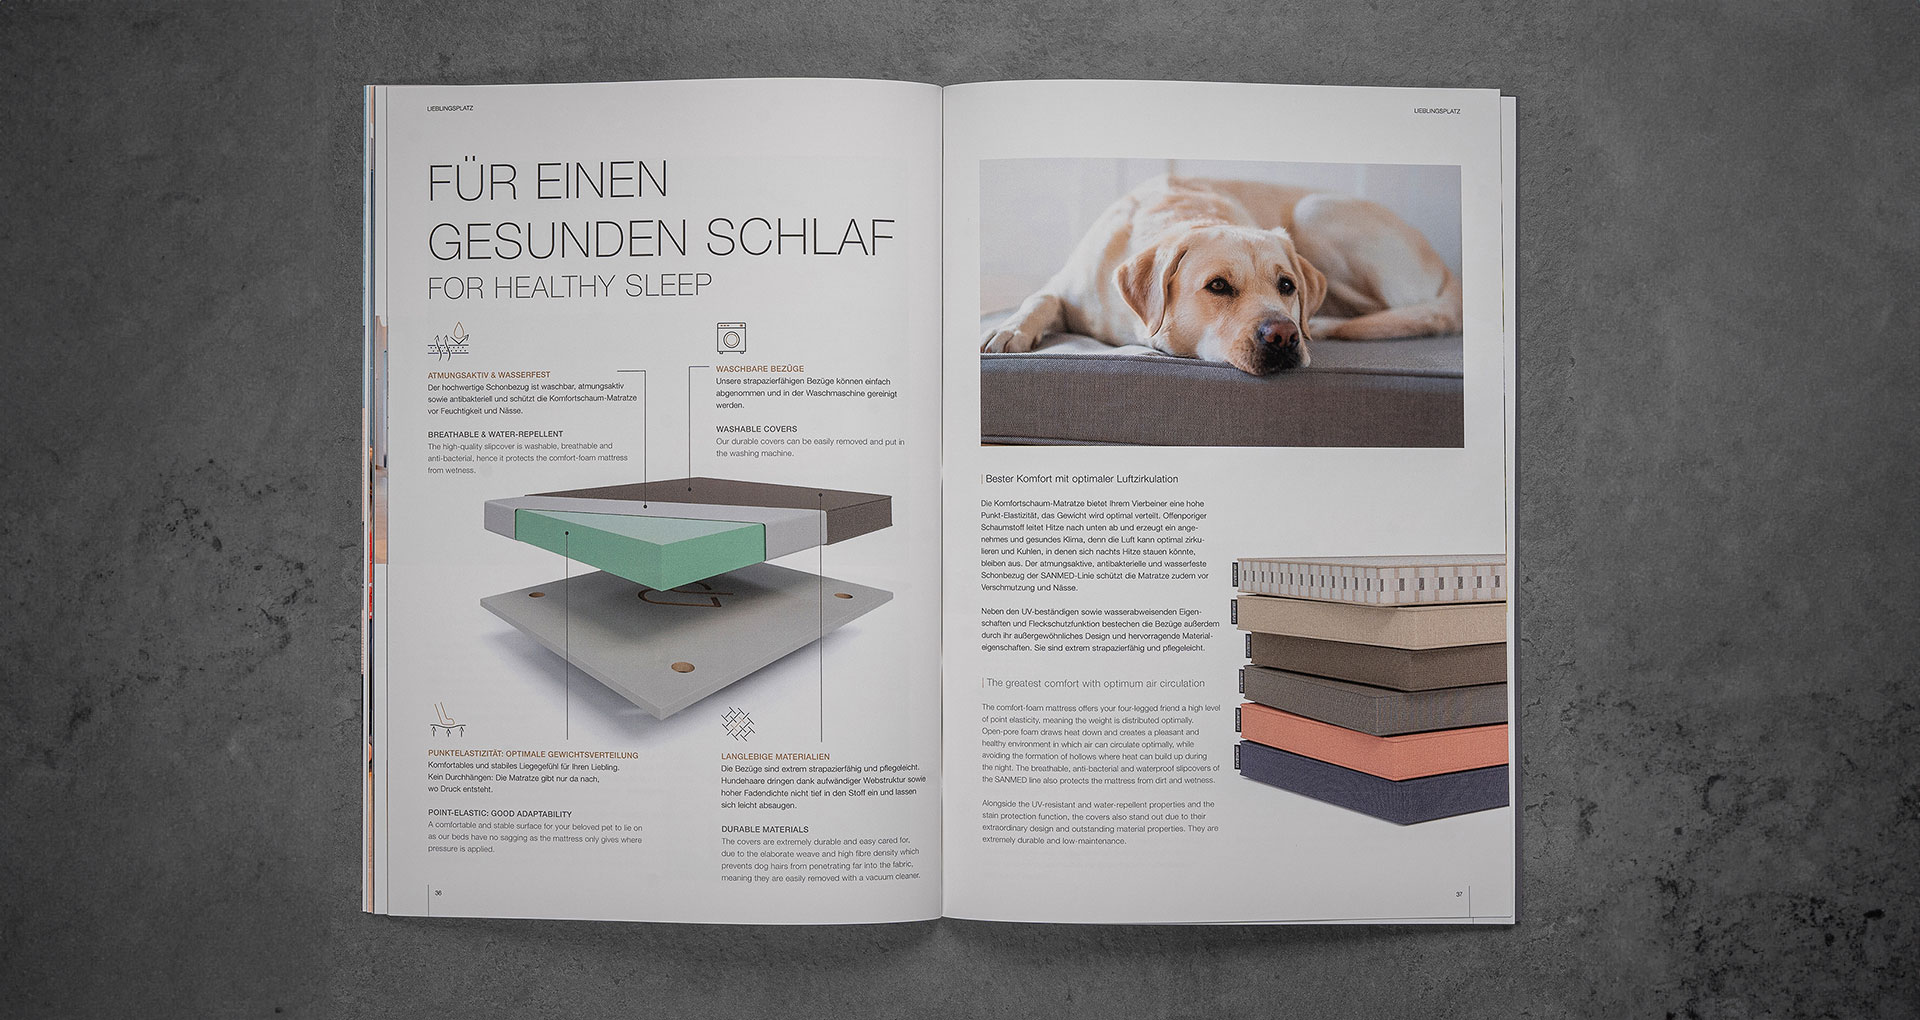 Broschüren Doppelseite über gesunden Schlaf für Hunde, linke Seite mit technischen Illustrationen und Texten, rechte Seite mit einem Bild von einem liegendem Hund auf einem Hundebett.